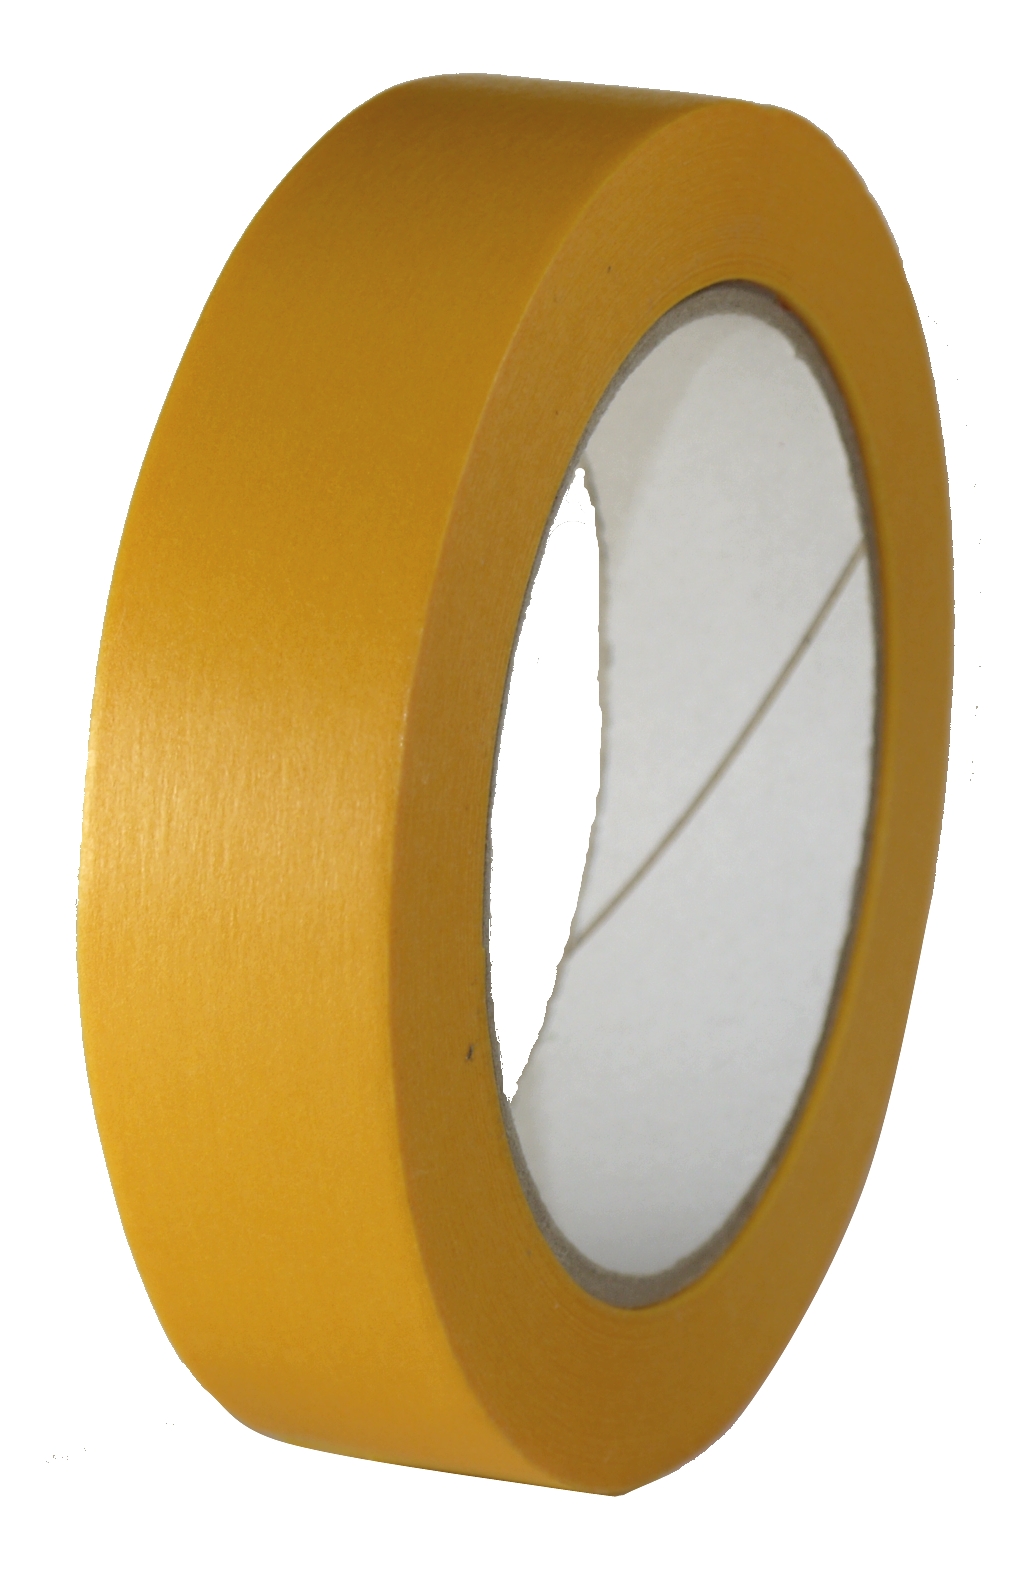 Tape Universal Gold/Orange 100°C Original Japanese Washi Tape 25 mm